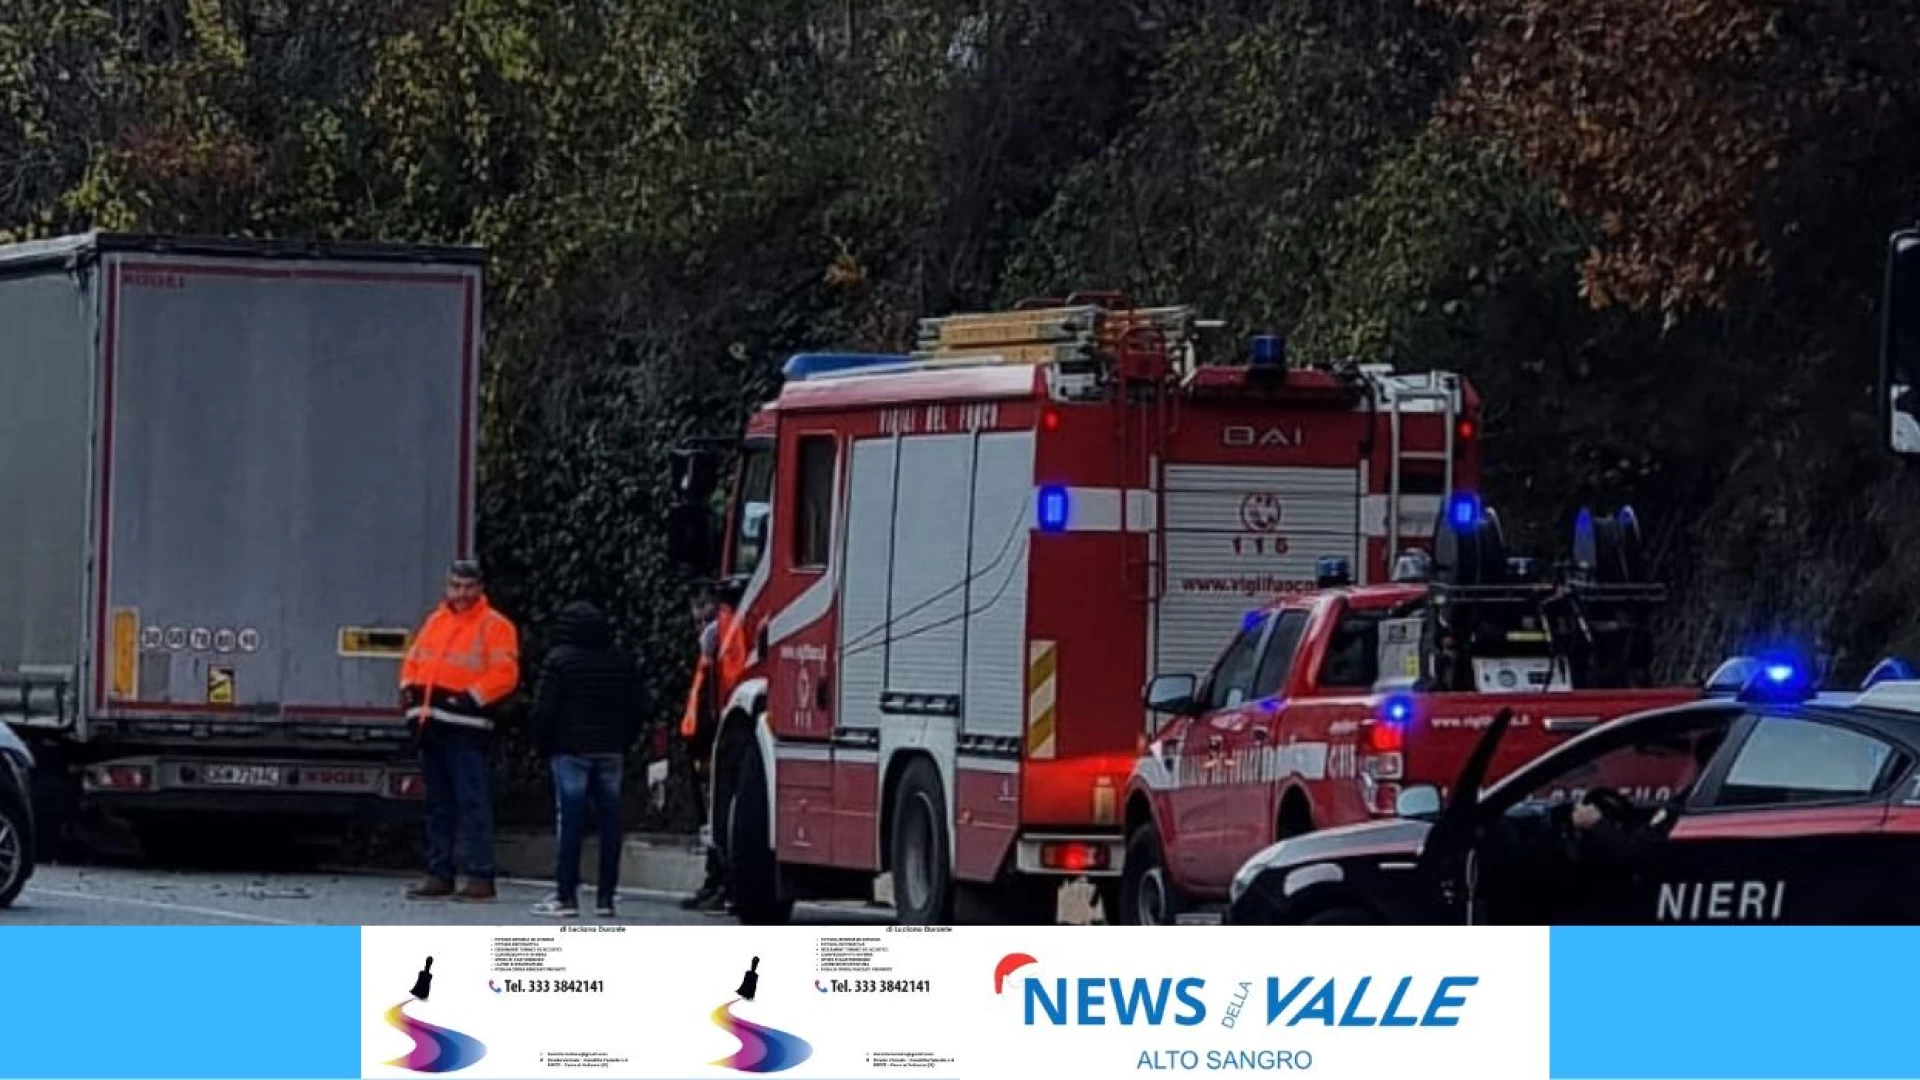 Colli a Volturno: scontro violento sulla statale 158 tra auto e Tir. Diversi i feriti. Traffico in tilt all'altezza di Ponte Sbiego.